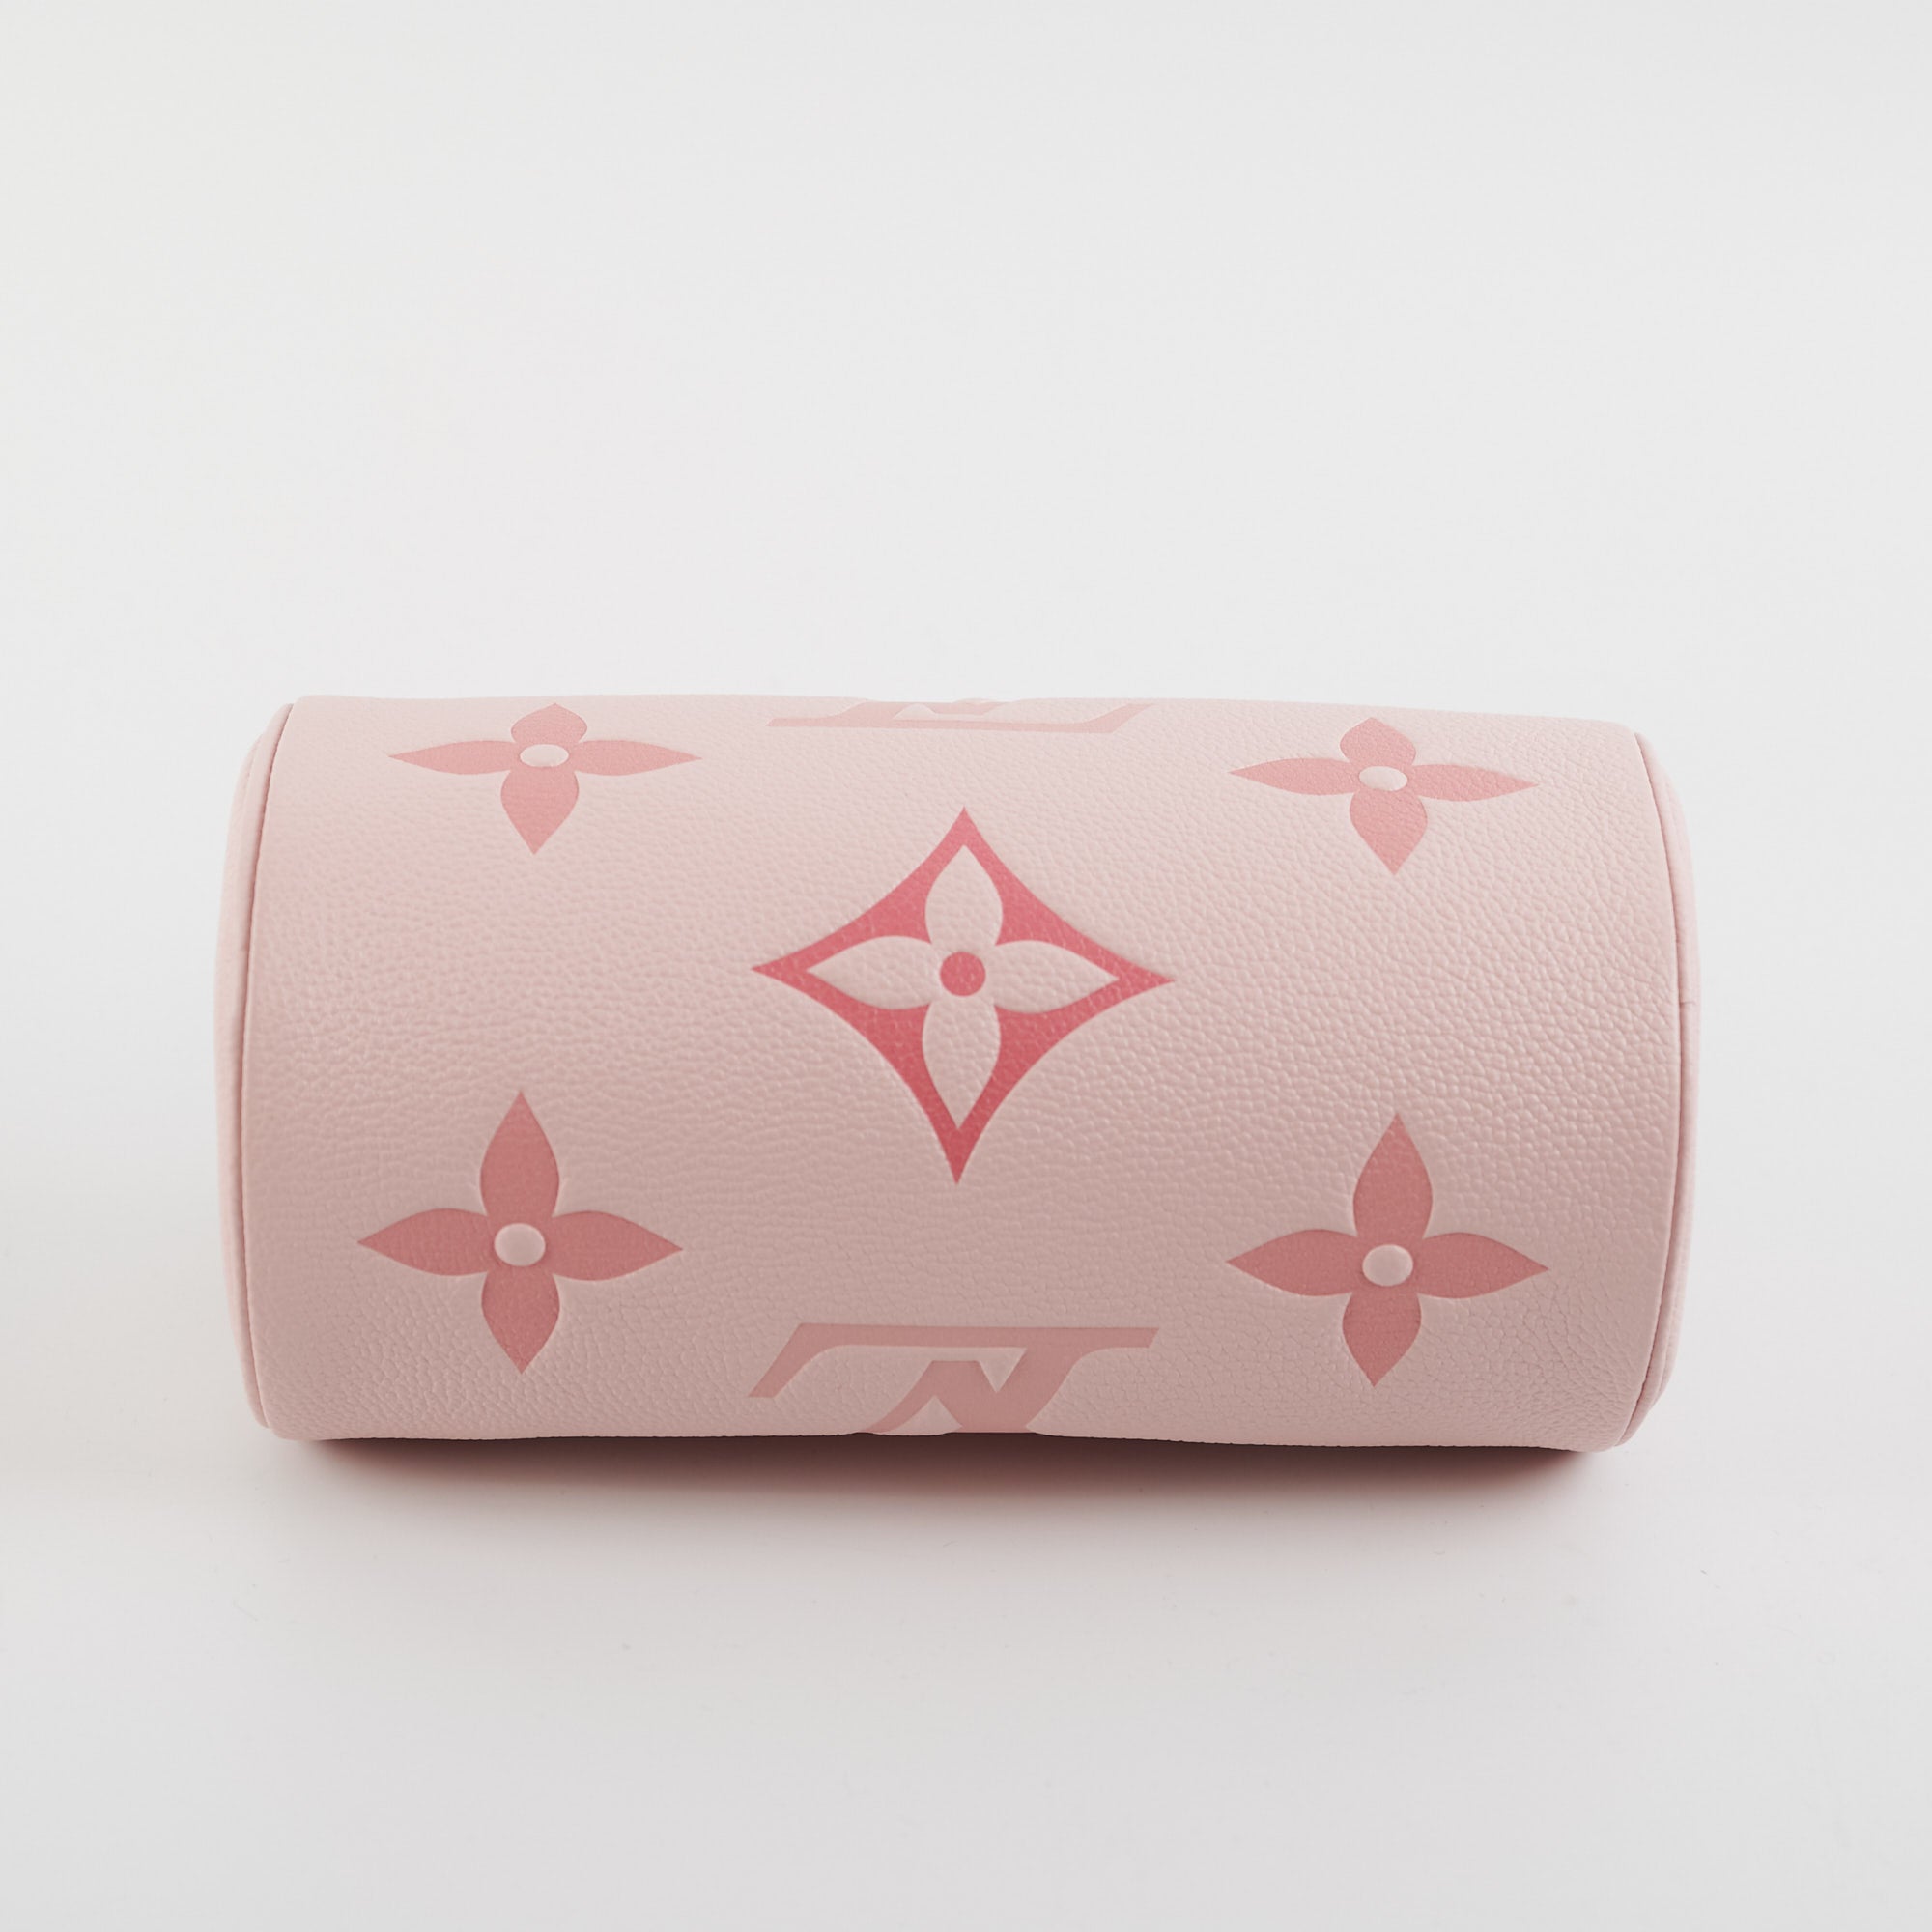 ITEM 7 - Louis Vuitton Papillion BB Pink Ombre - THE PURSE AFFAIR